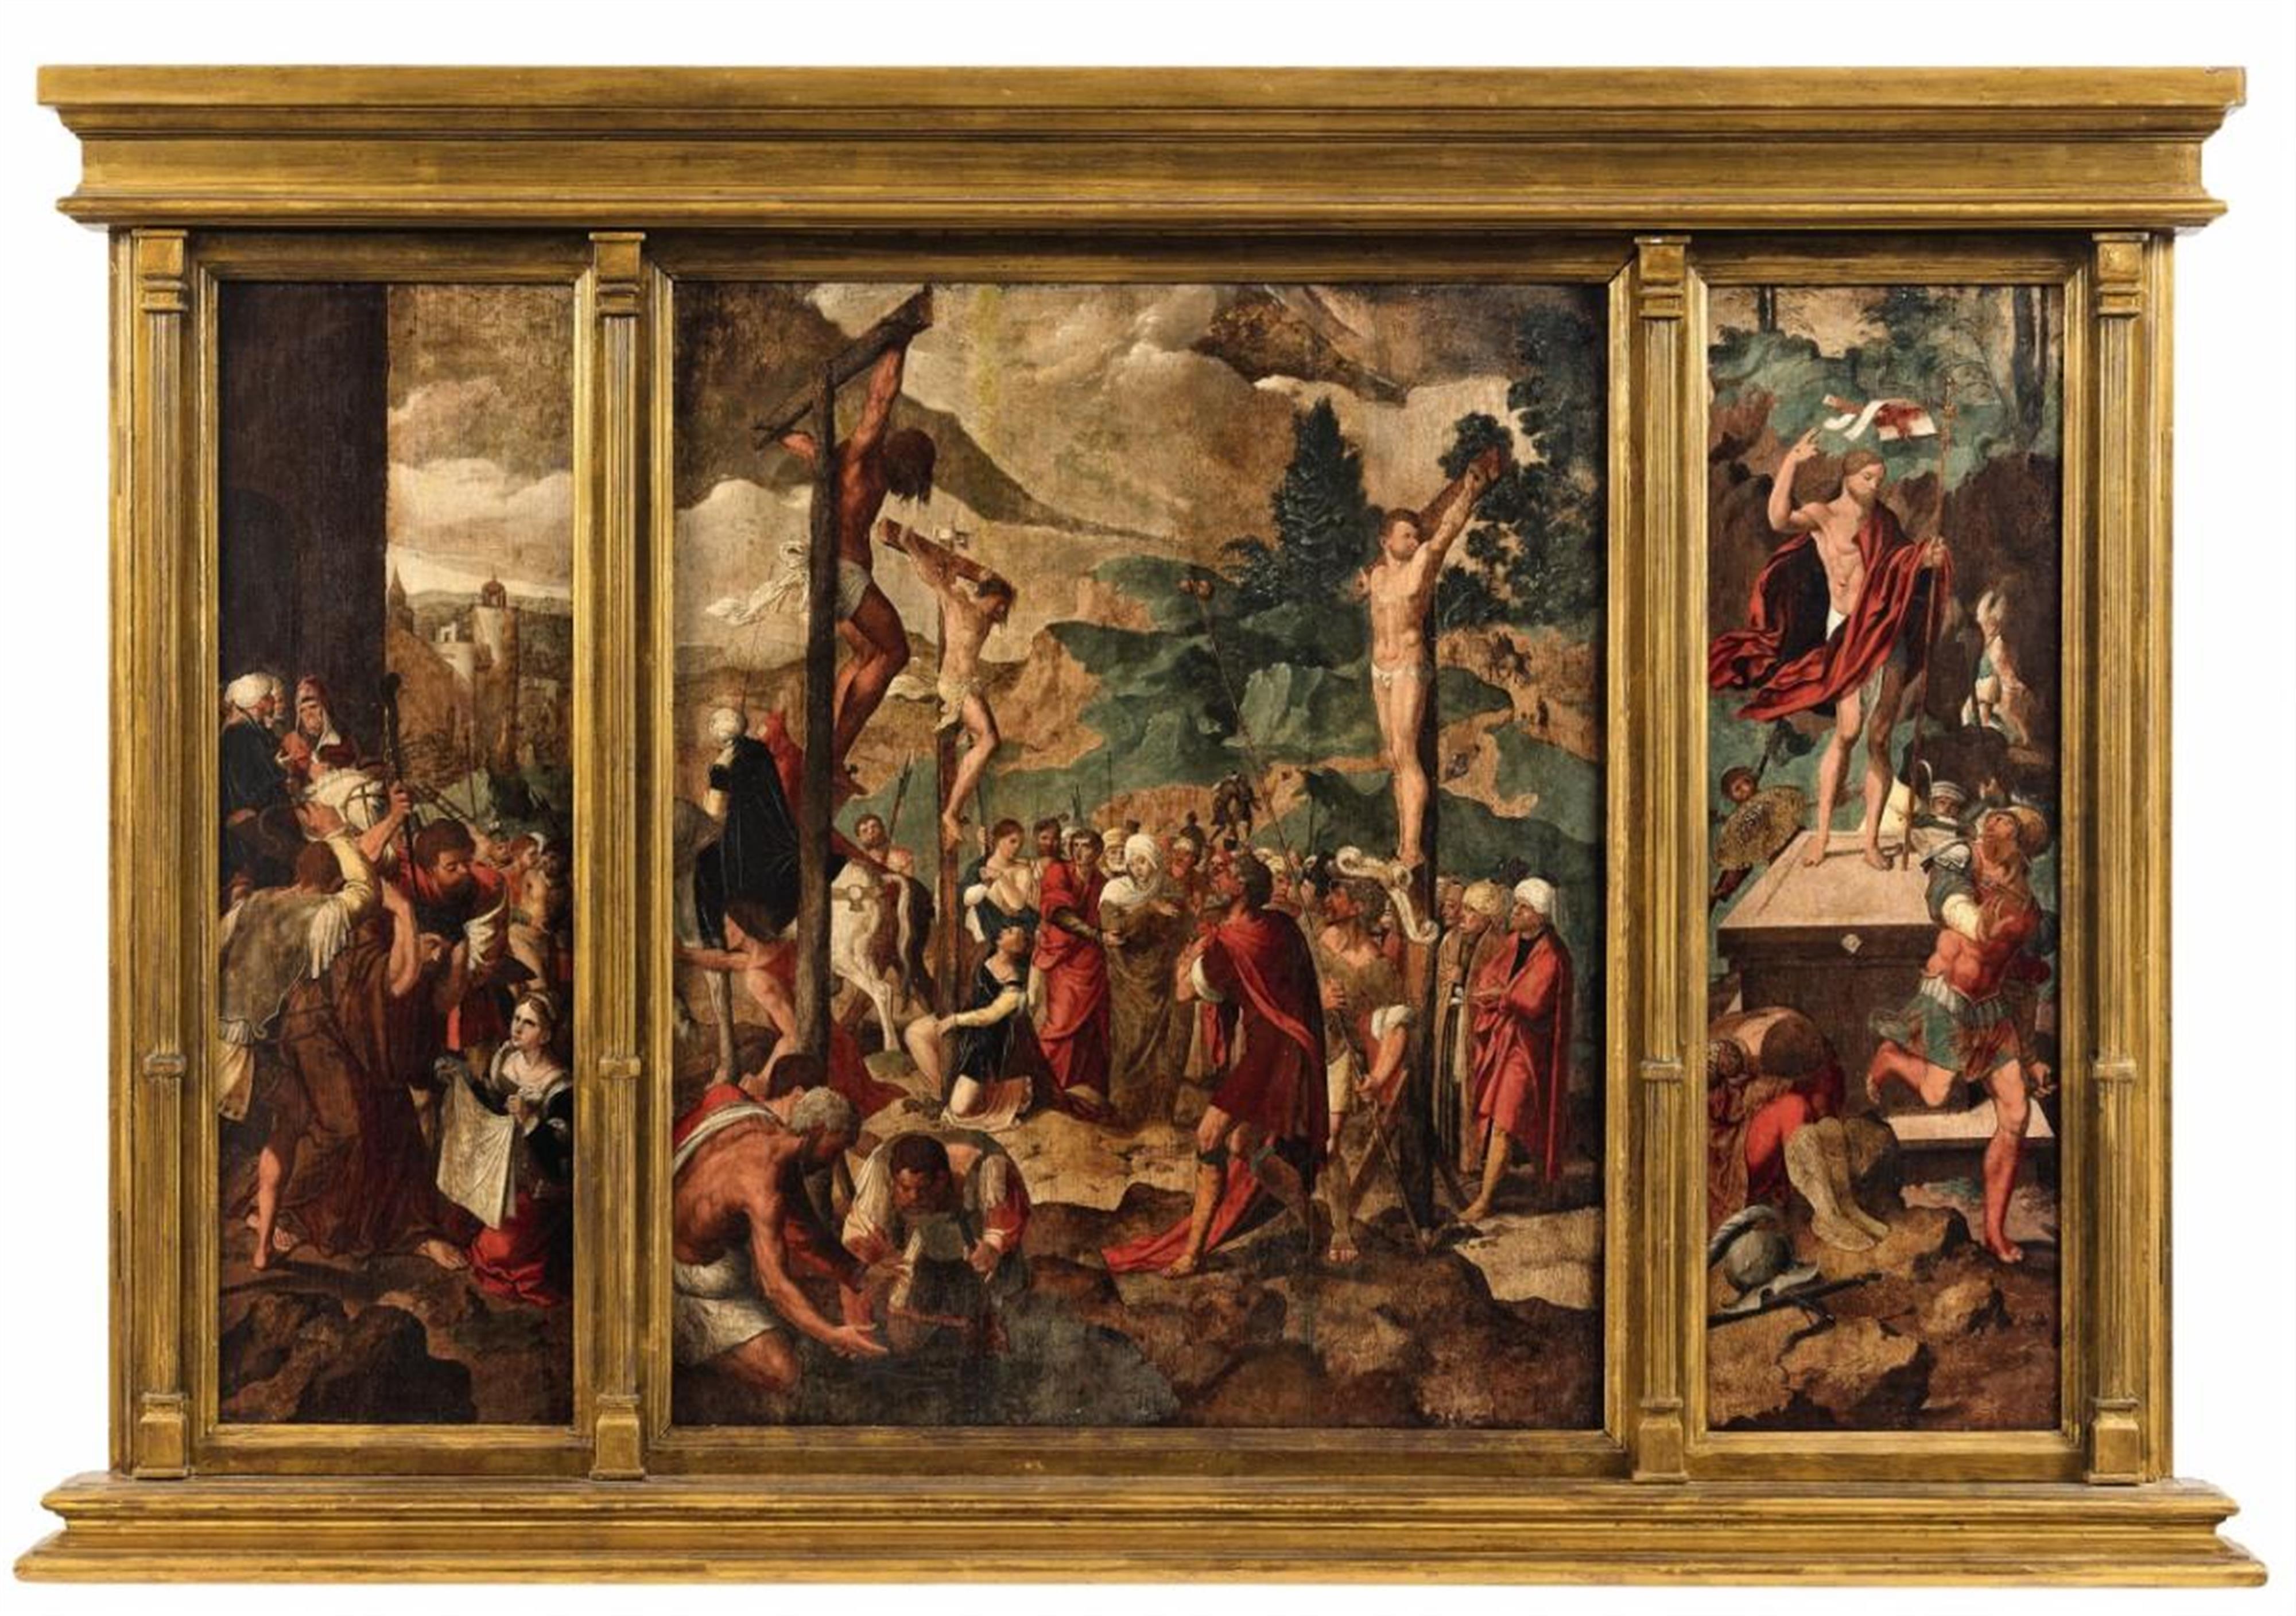 Niederländischer Meister 16. Jahrhundert - Flügelaltar mit der Kreuzigung Christi